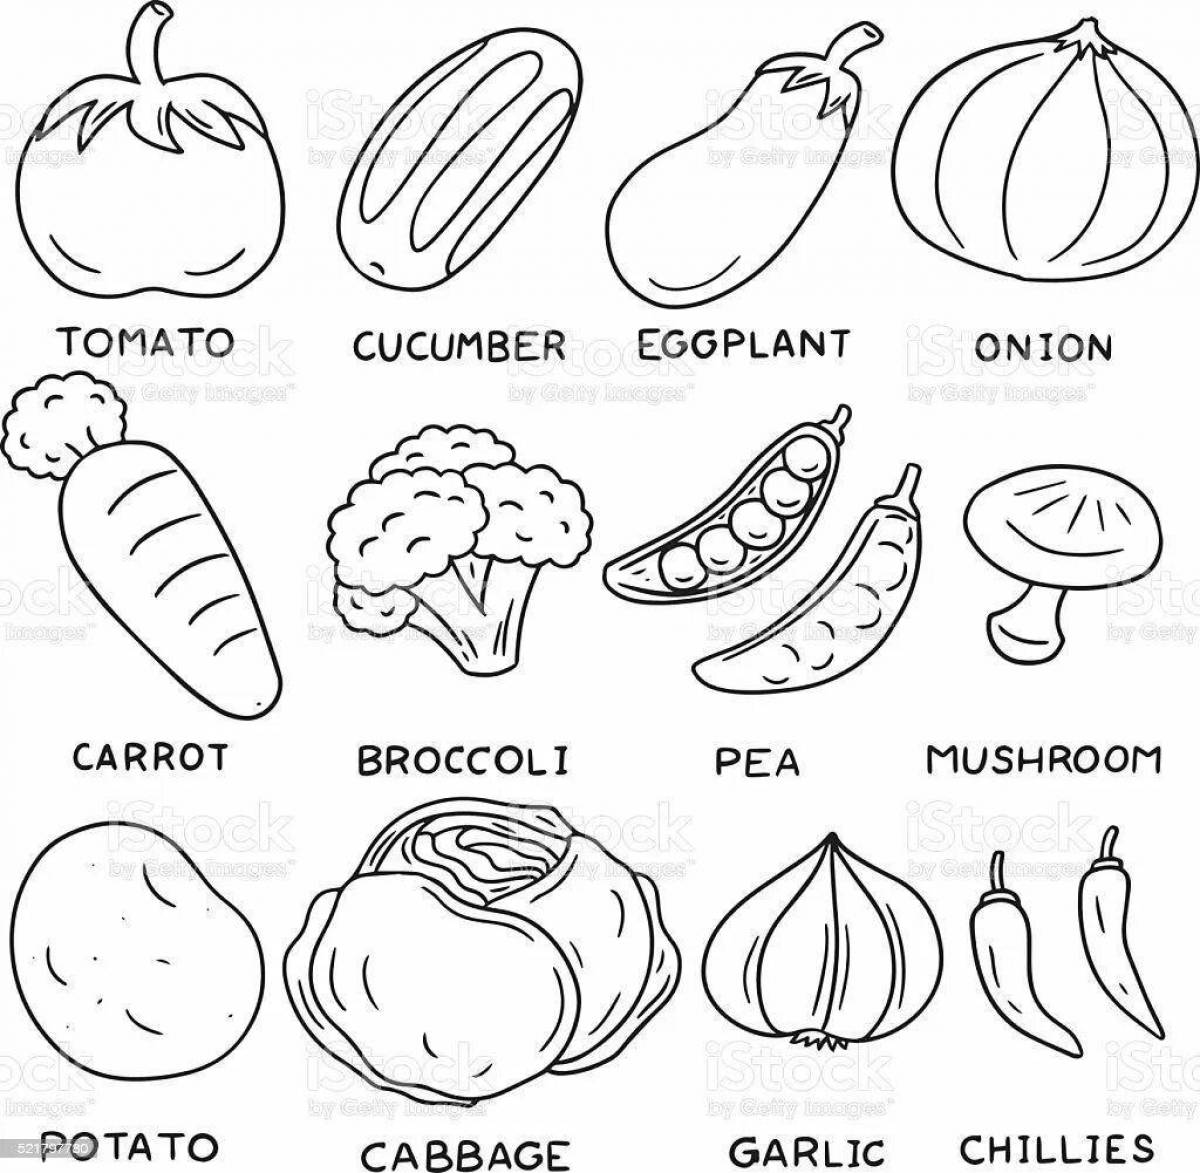 Овощи на английском для детей #5